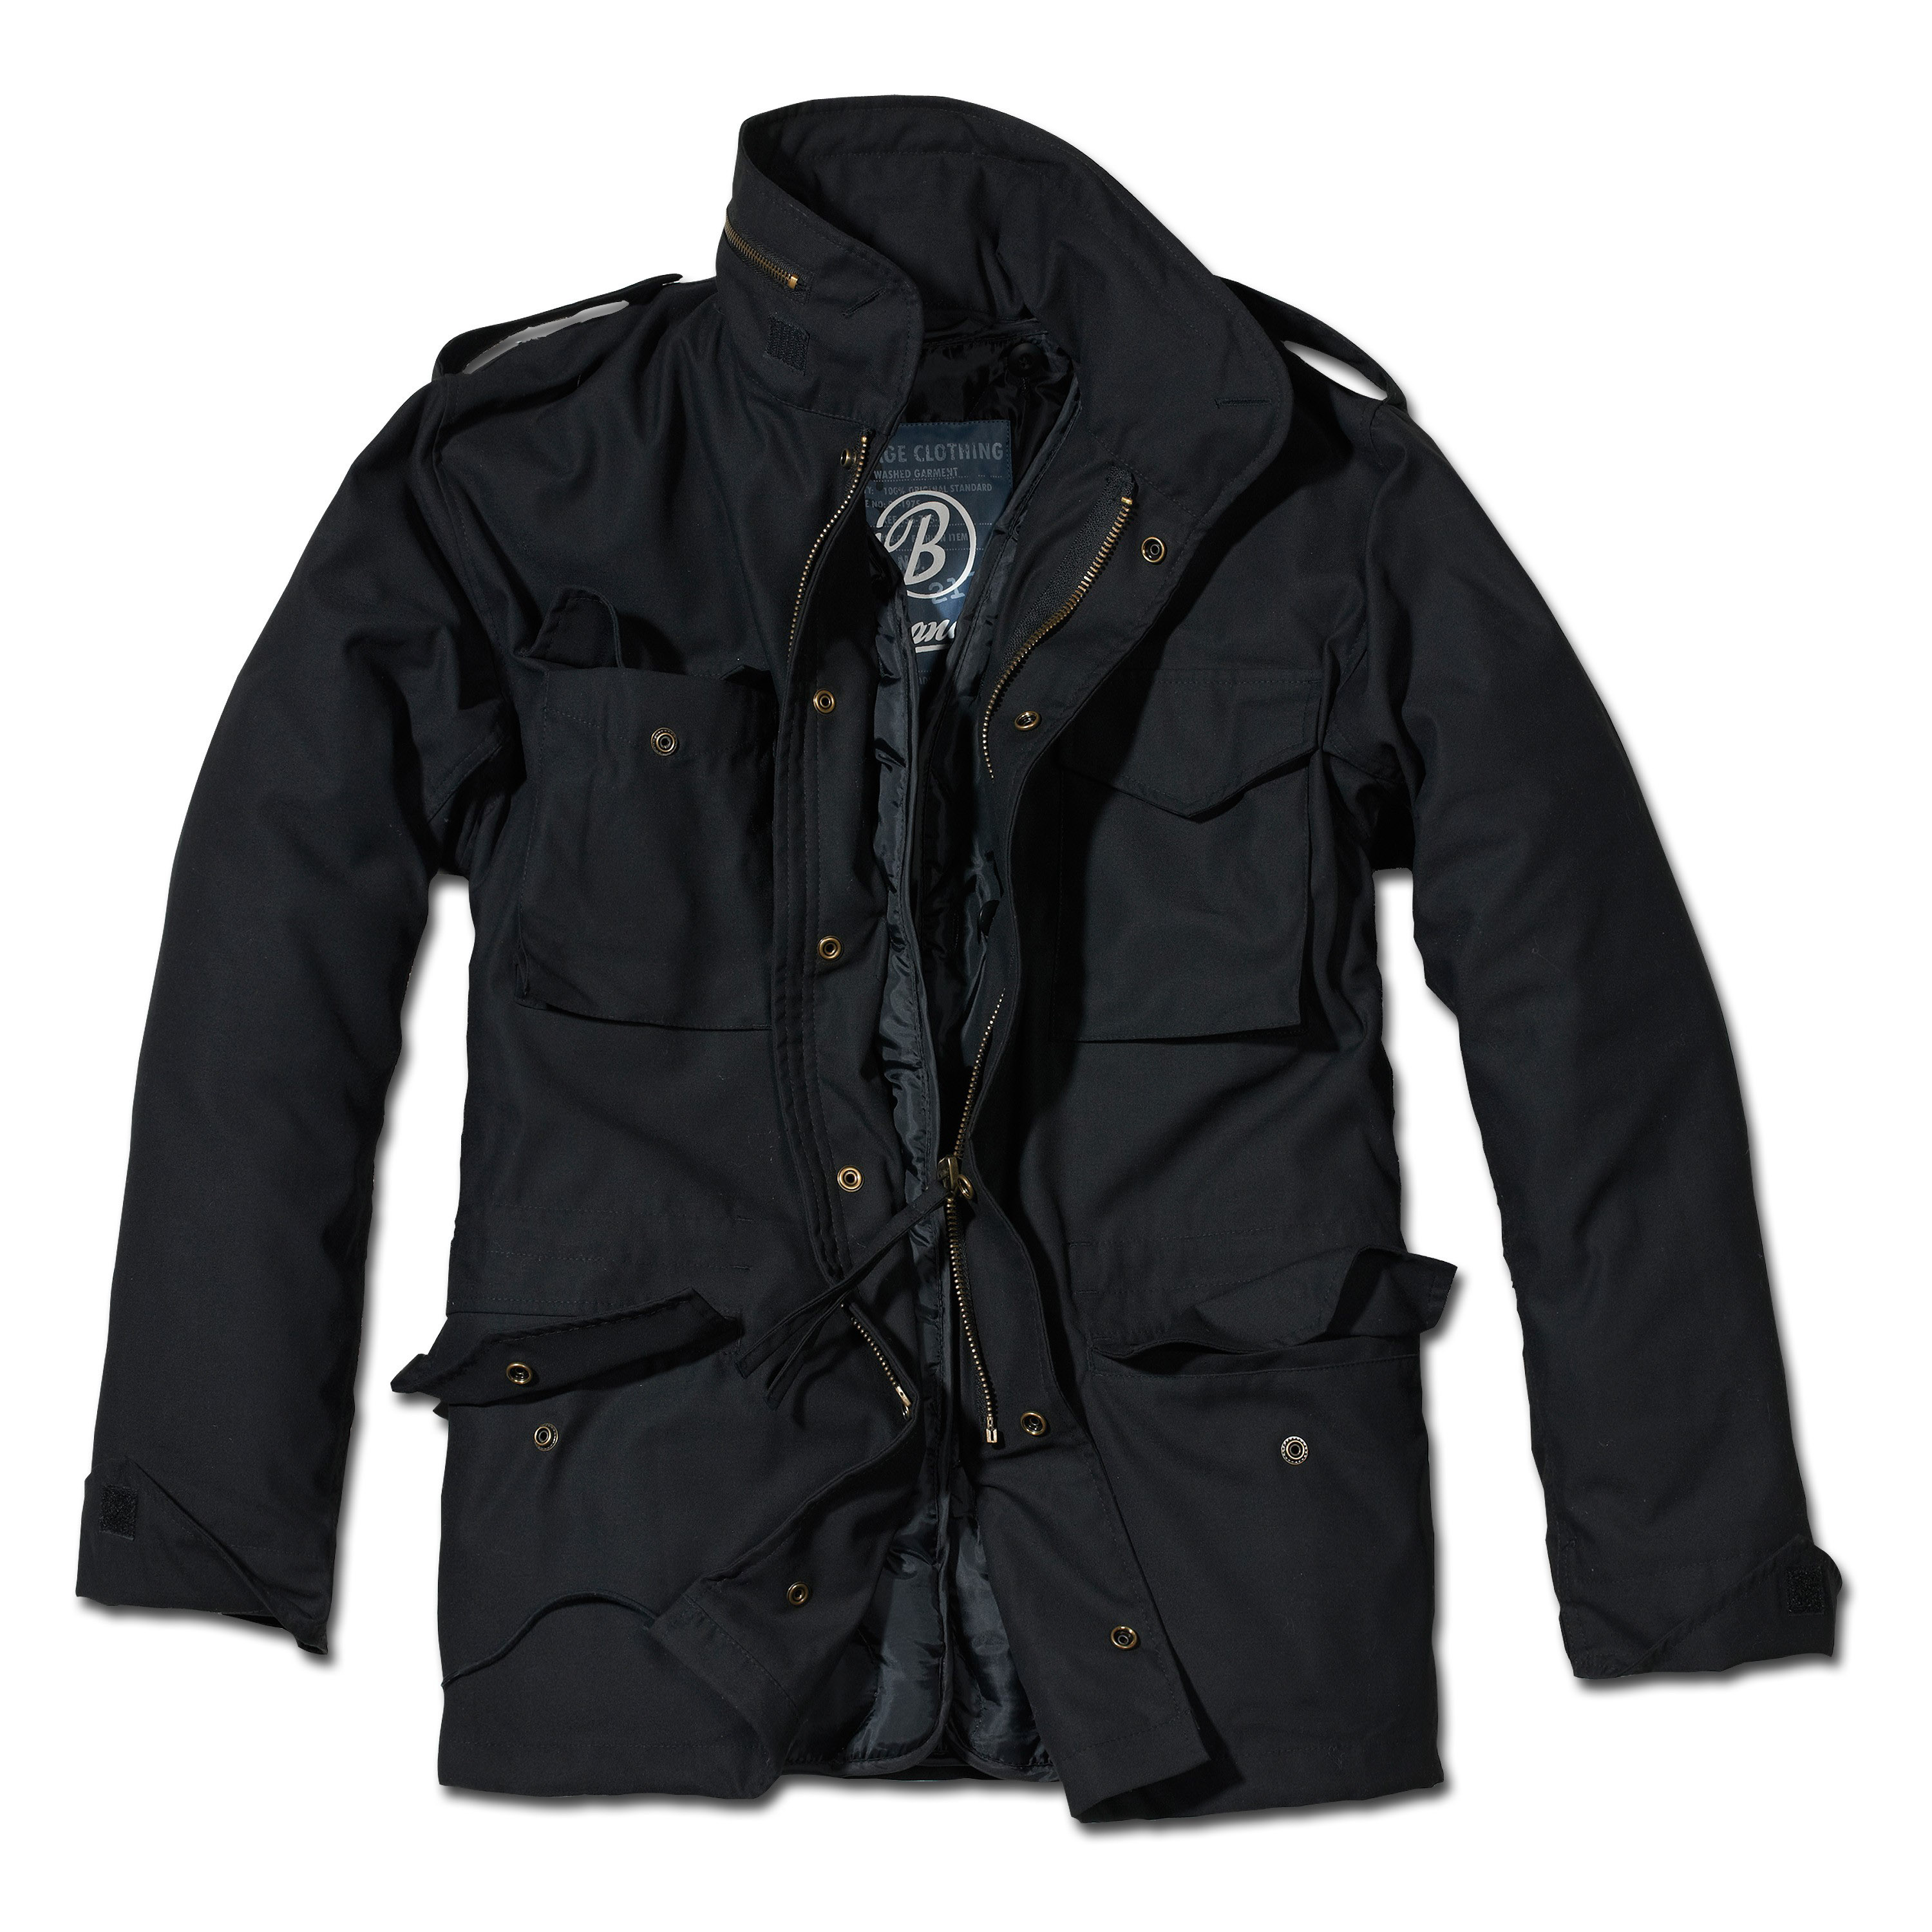 Осенние куртки мужские купить в москве. Brandit m65. M65 Standard Brandit. Куртка m65 Standard Brandit Black. M-65 Classic Brandit.